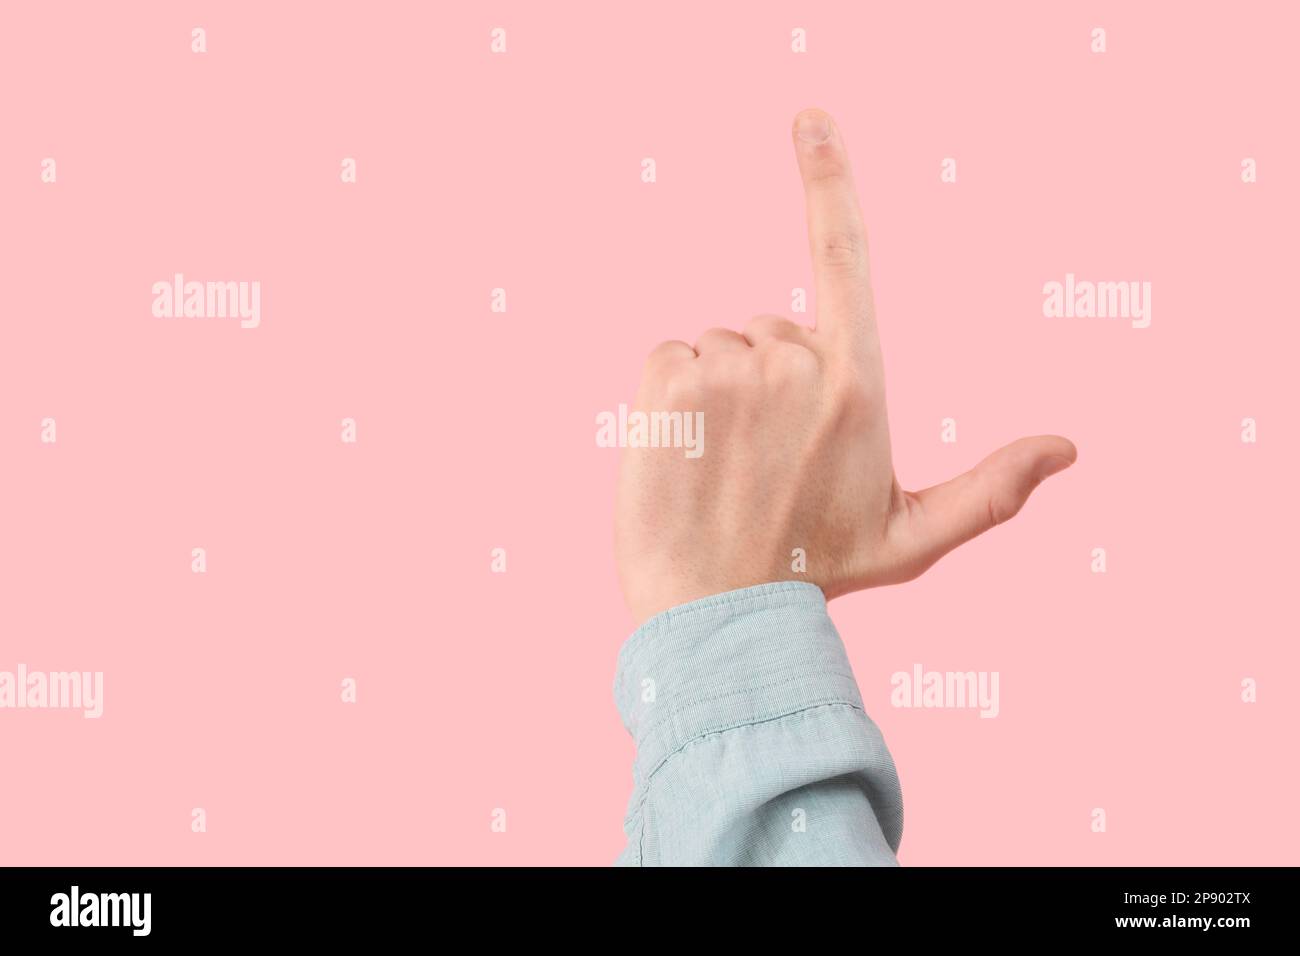 Die Hand eines Mannes zeigt eine Verlierer-Geste auf pinkfarbenem Hintergrund Stockfoto